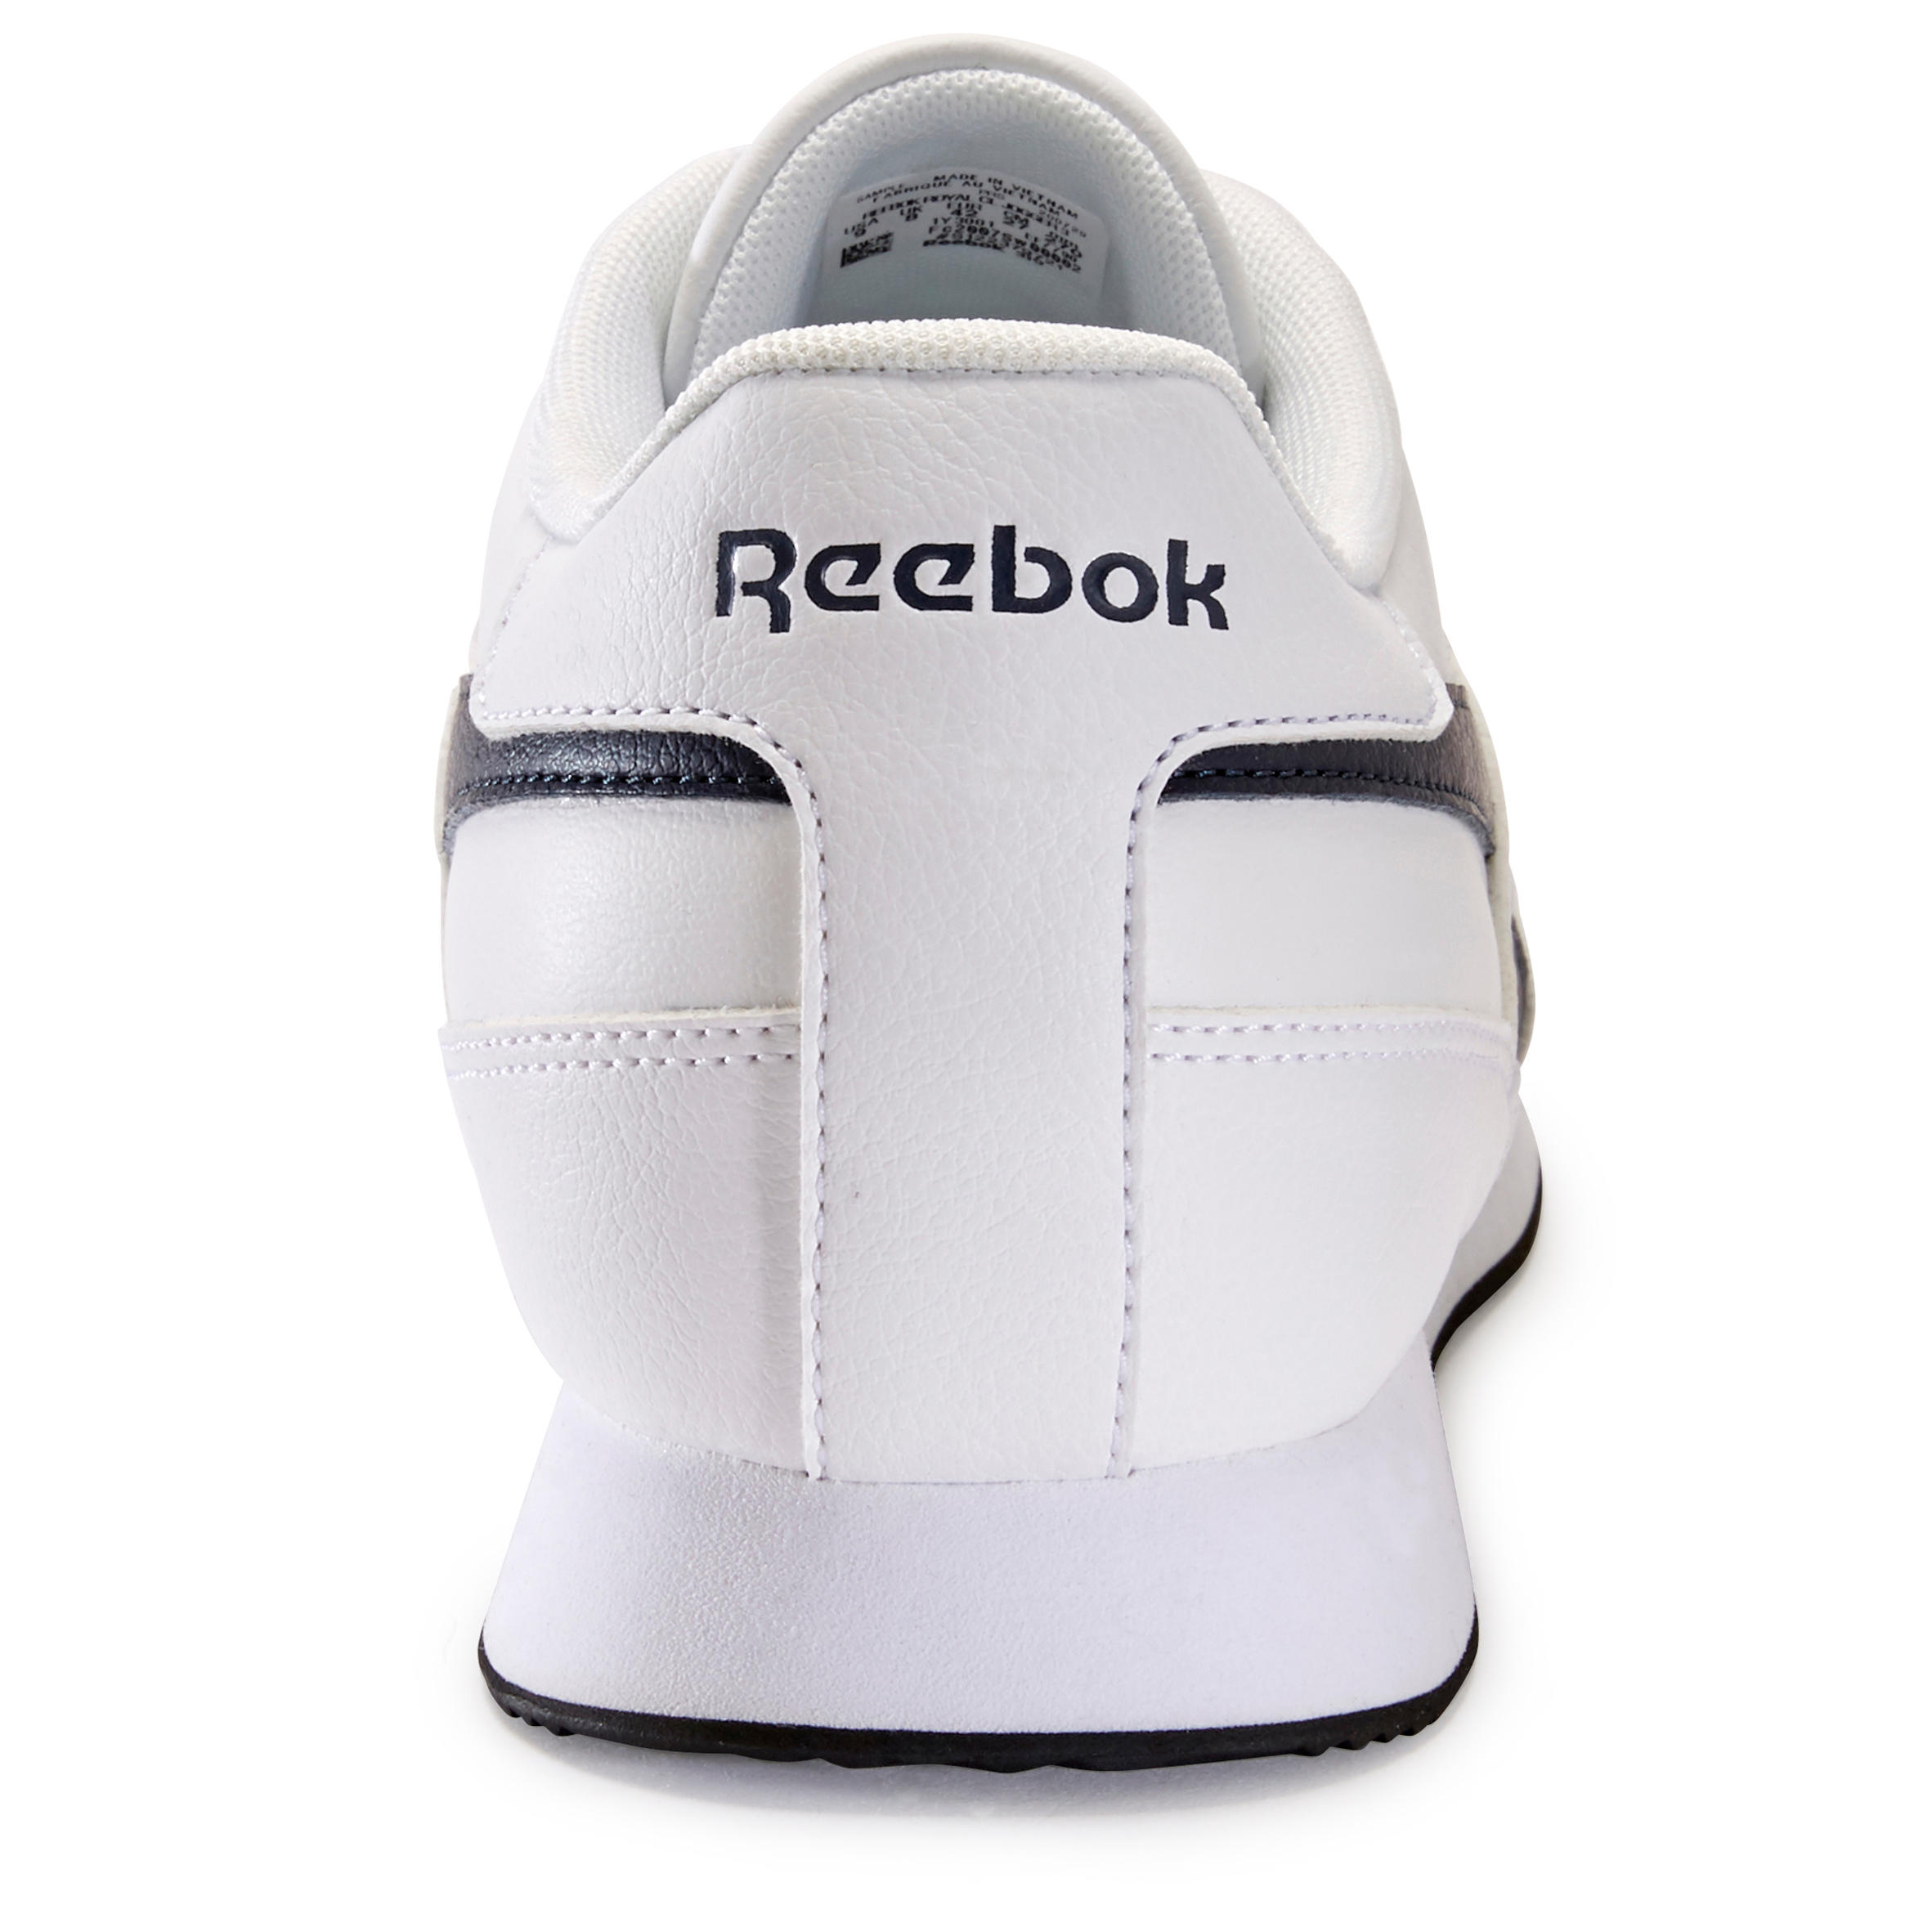 Men's Urban Walking Shoes Reebok Royal Classic - white 4/8